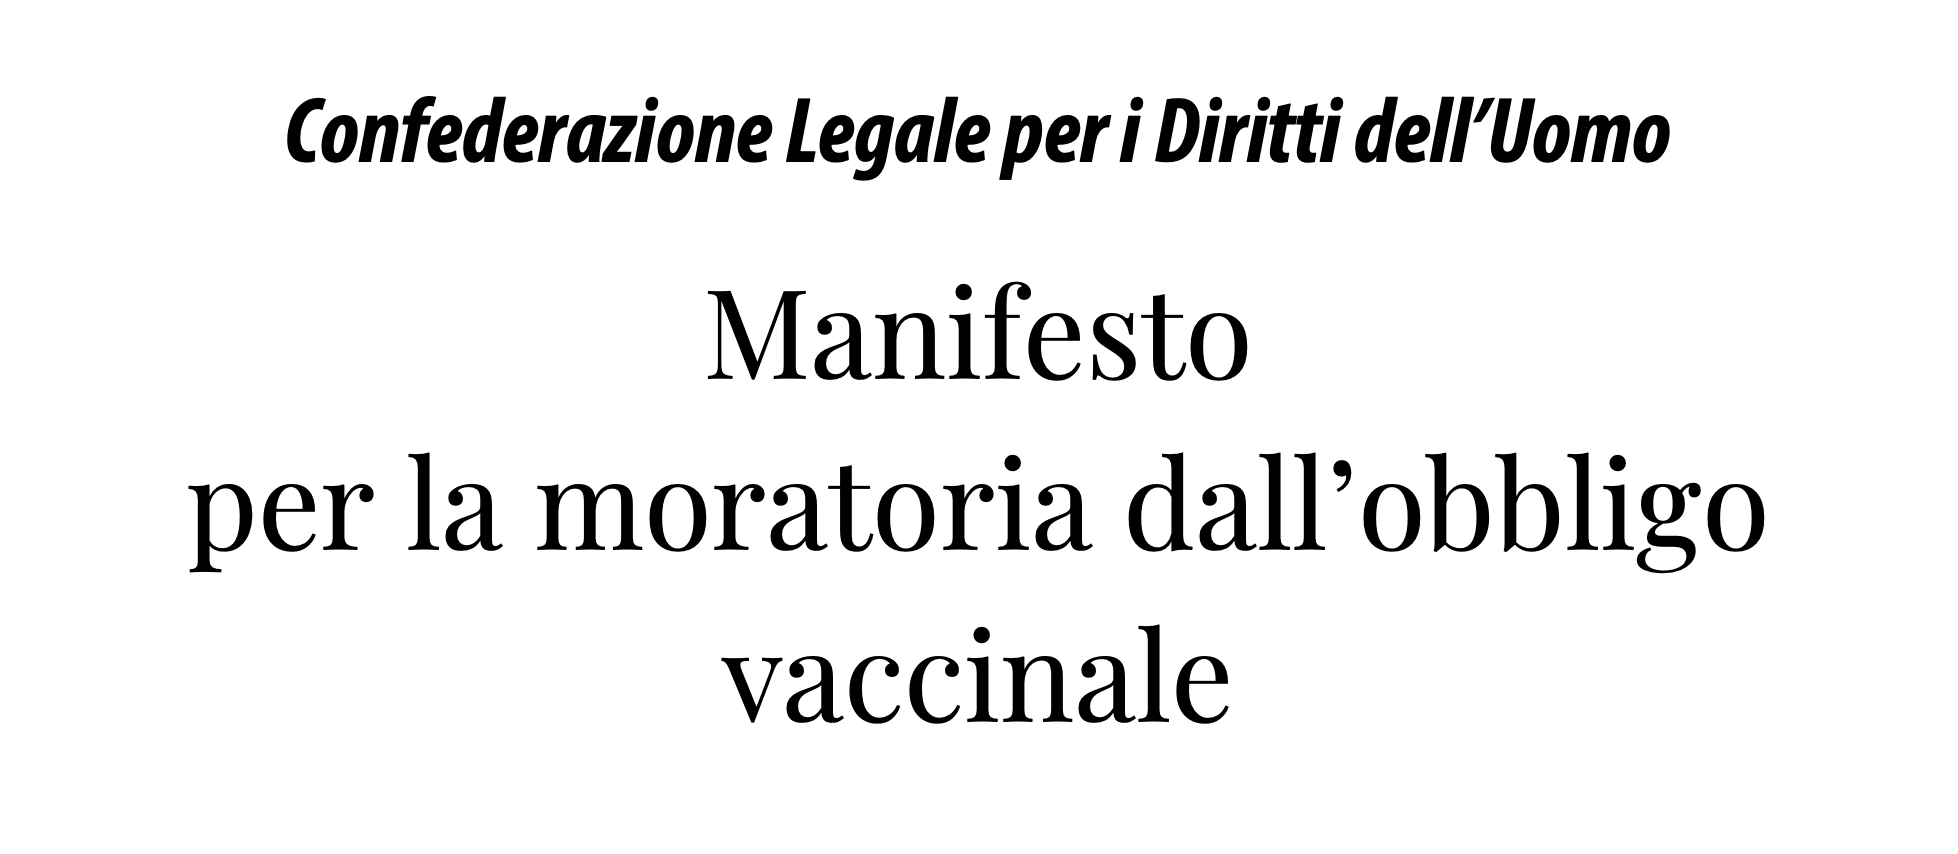 Manifesto per la moratoria dall’obbligo vaccinale